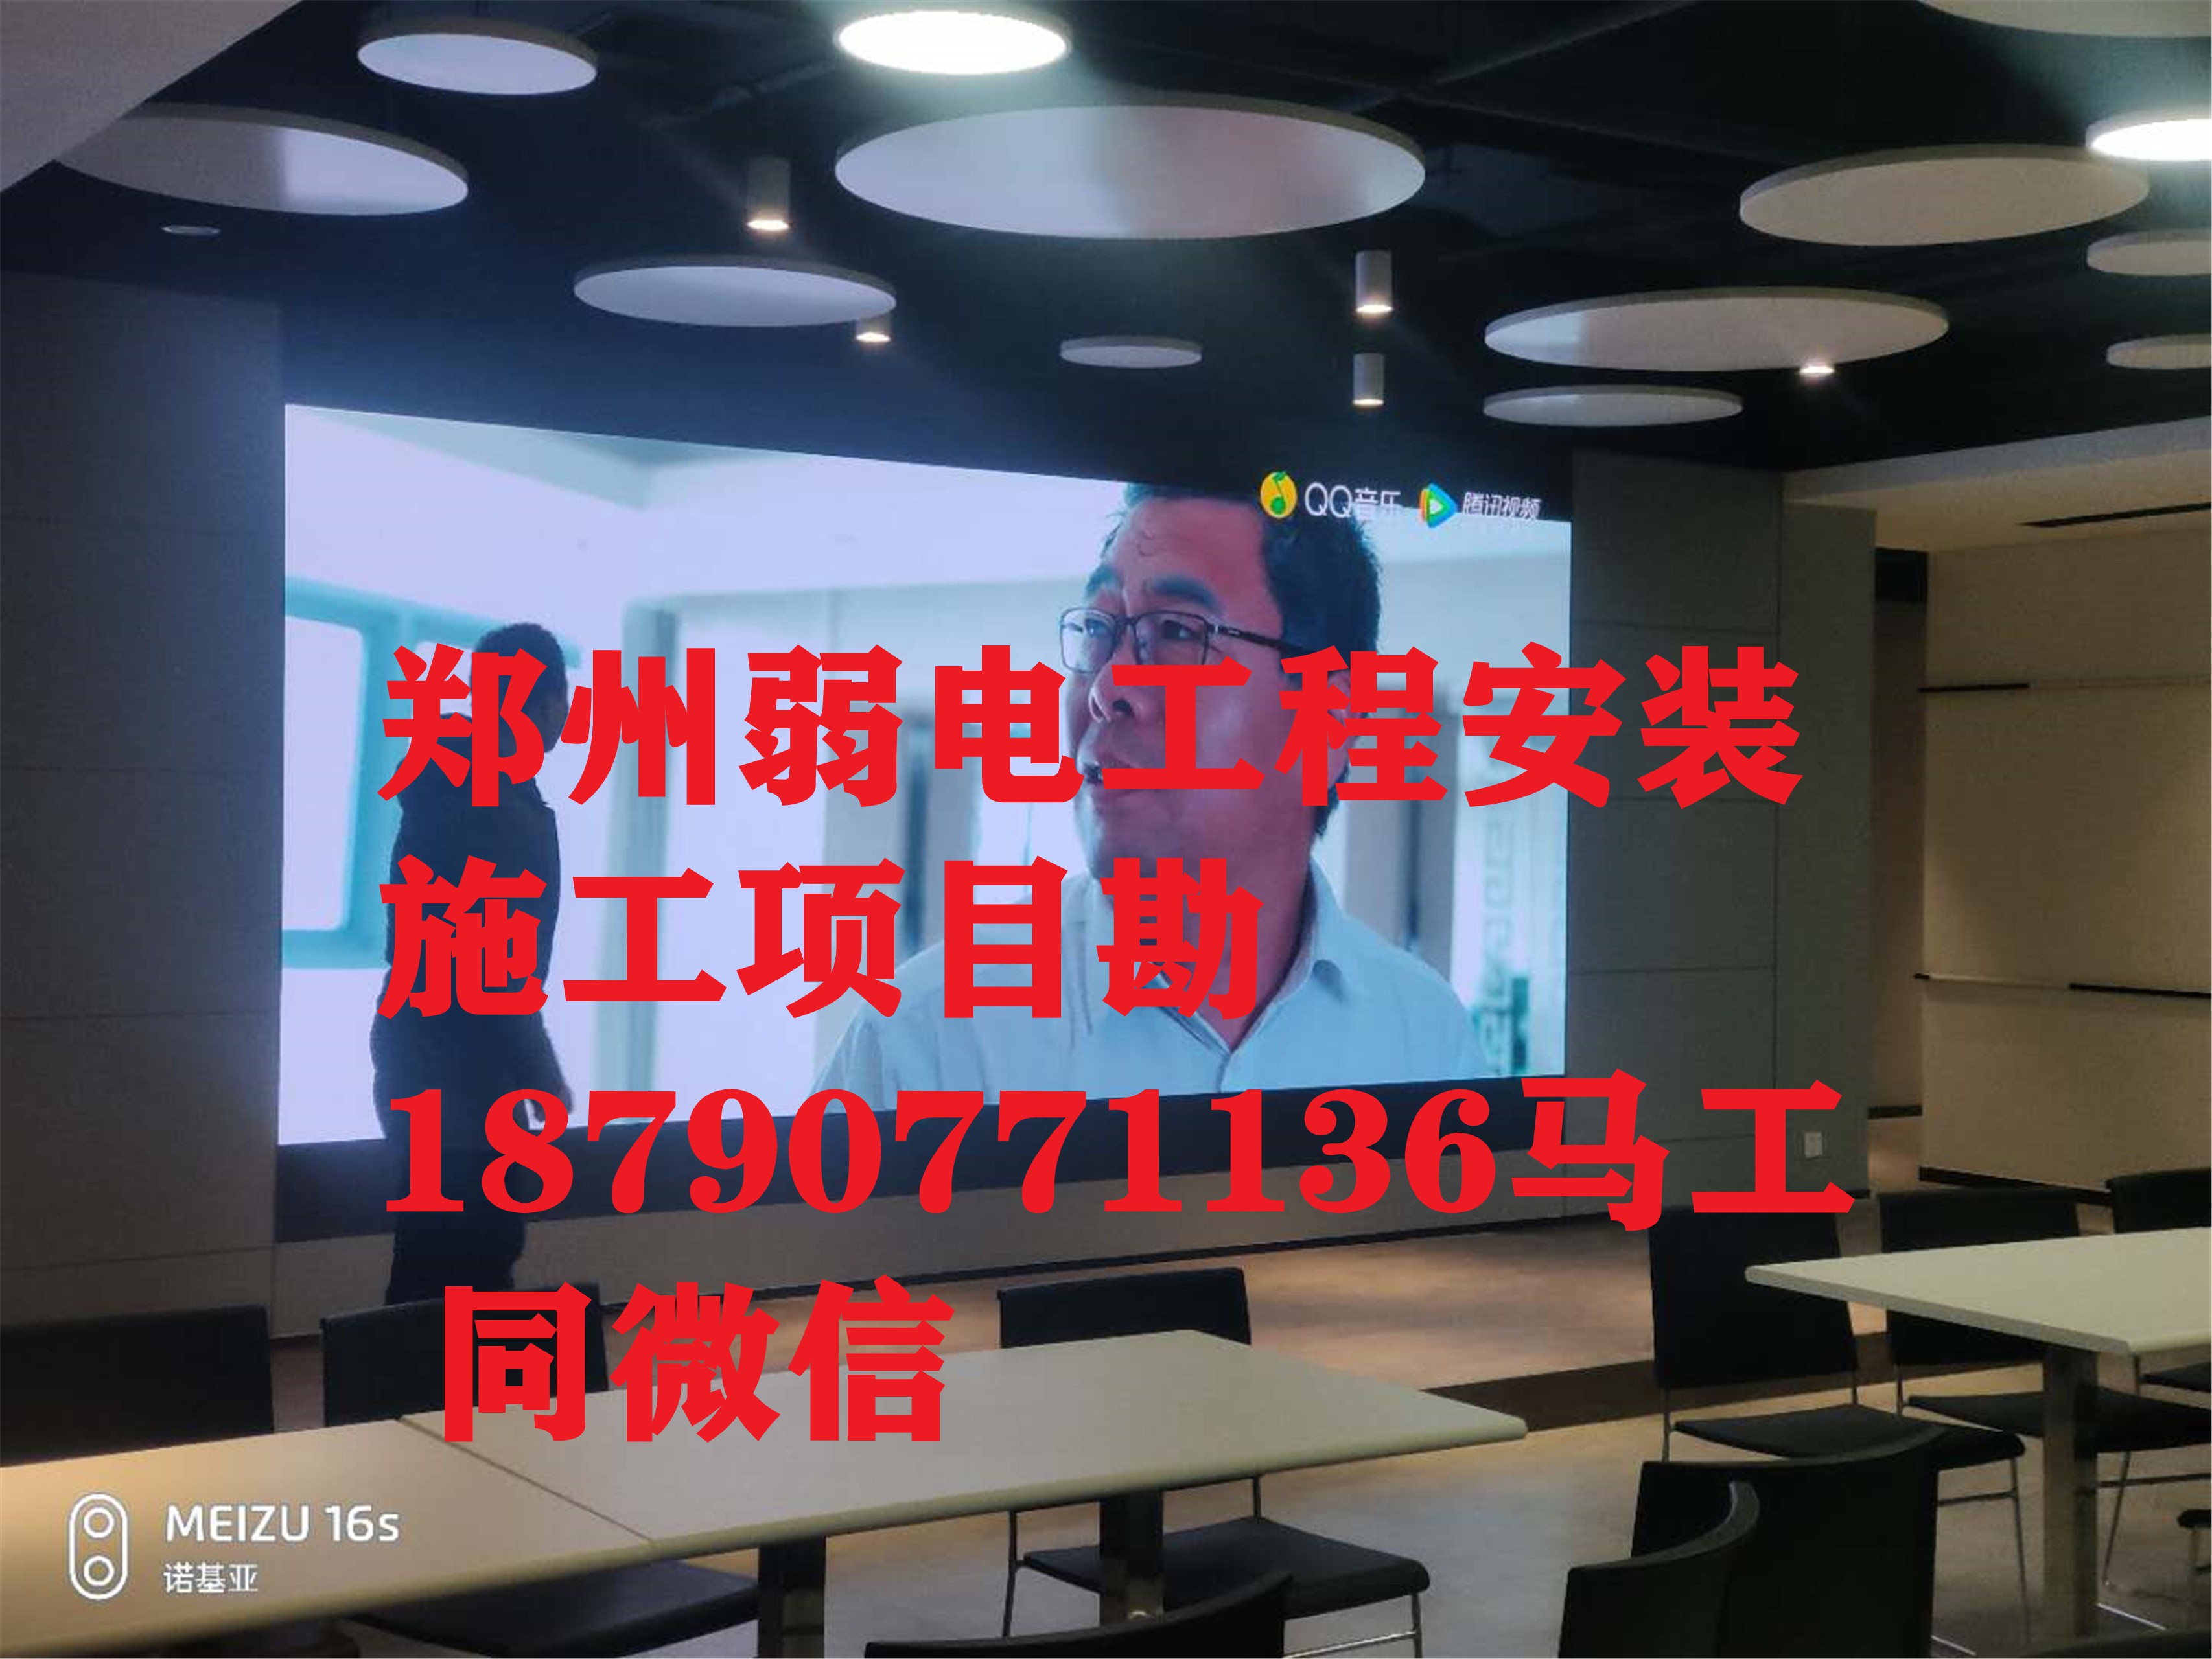 新郑市新村镇弱电安防监控维修监控安装监控调试监控设备监控报价系统